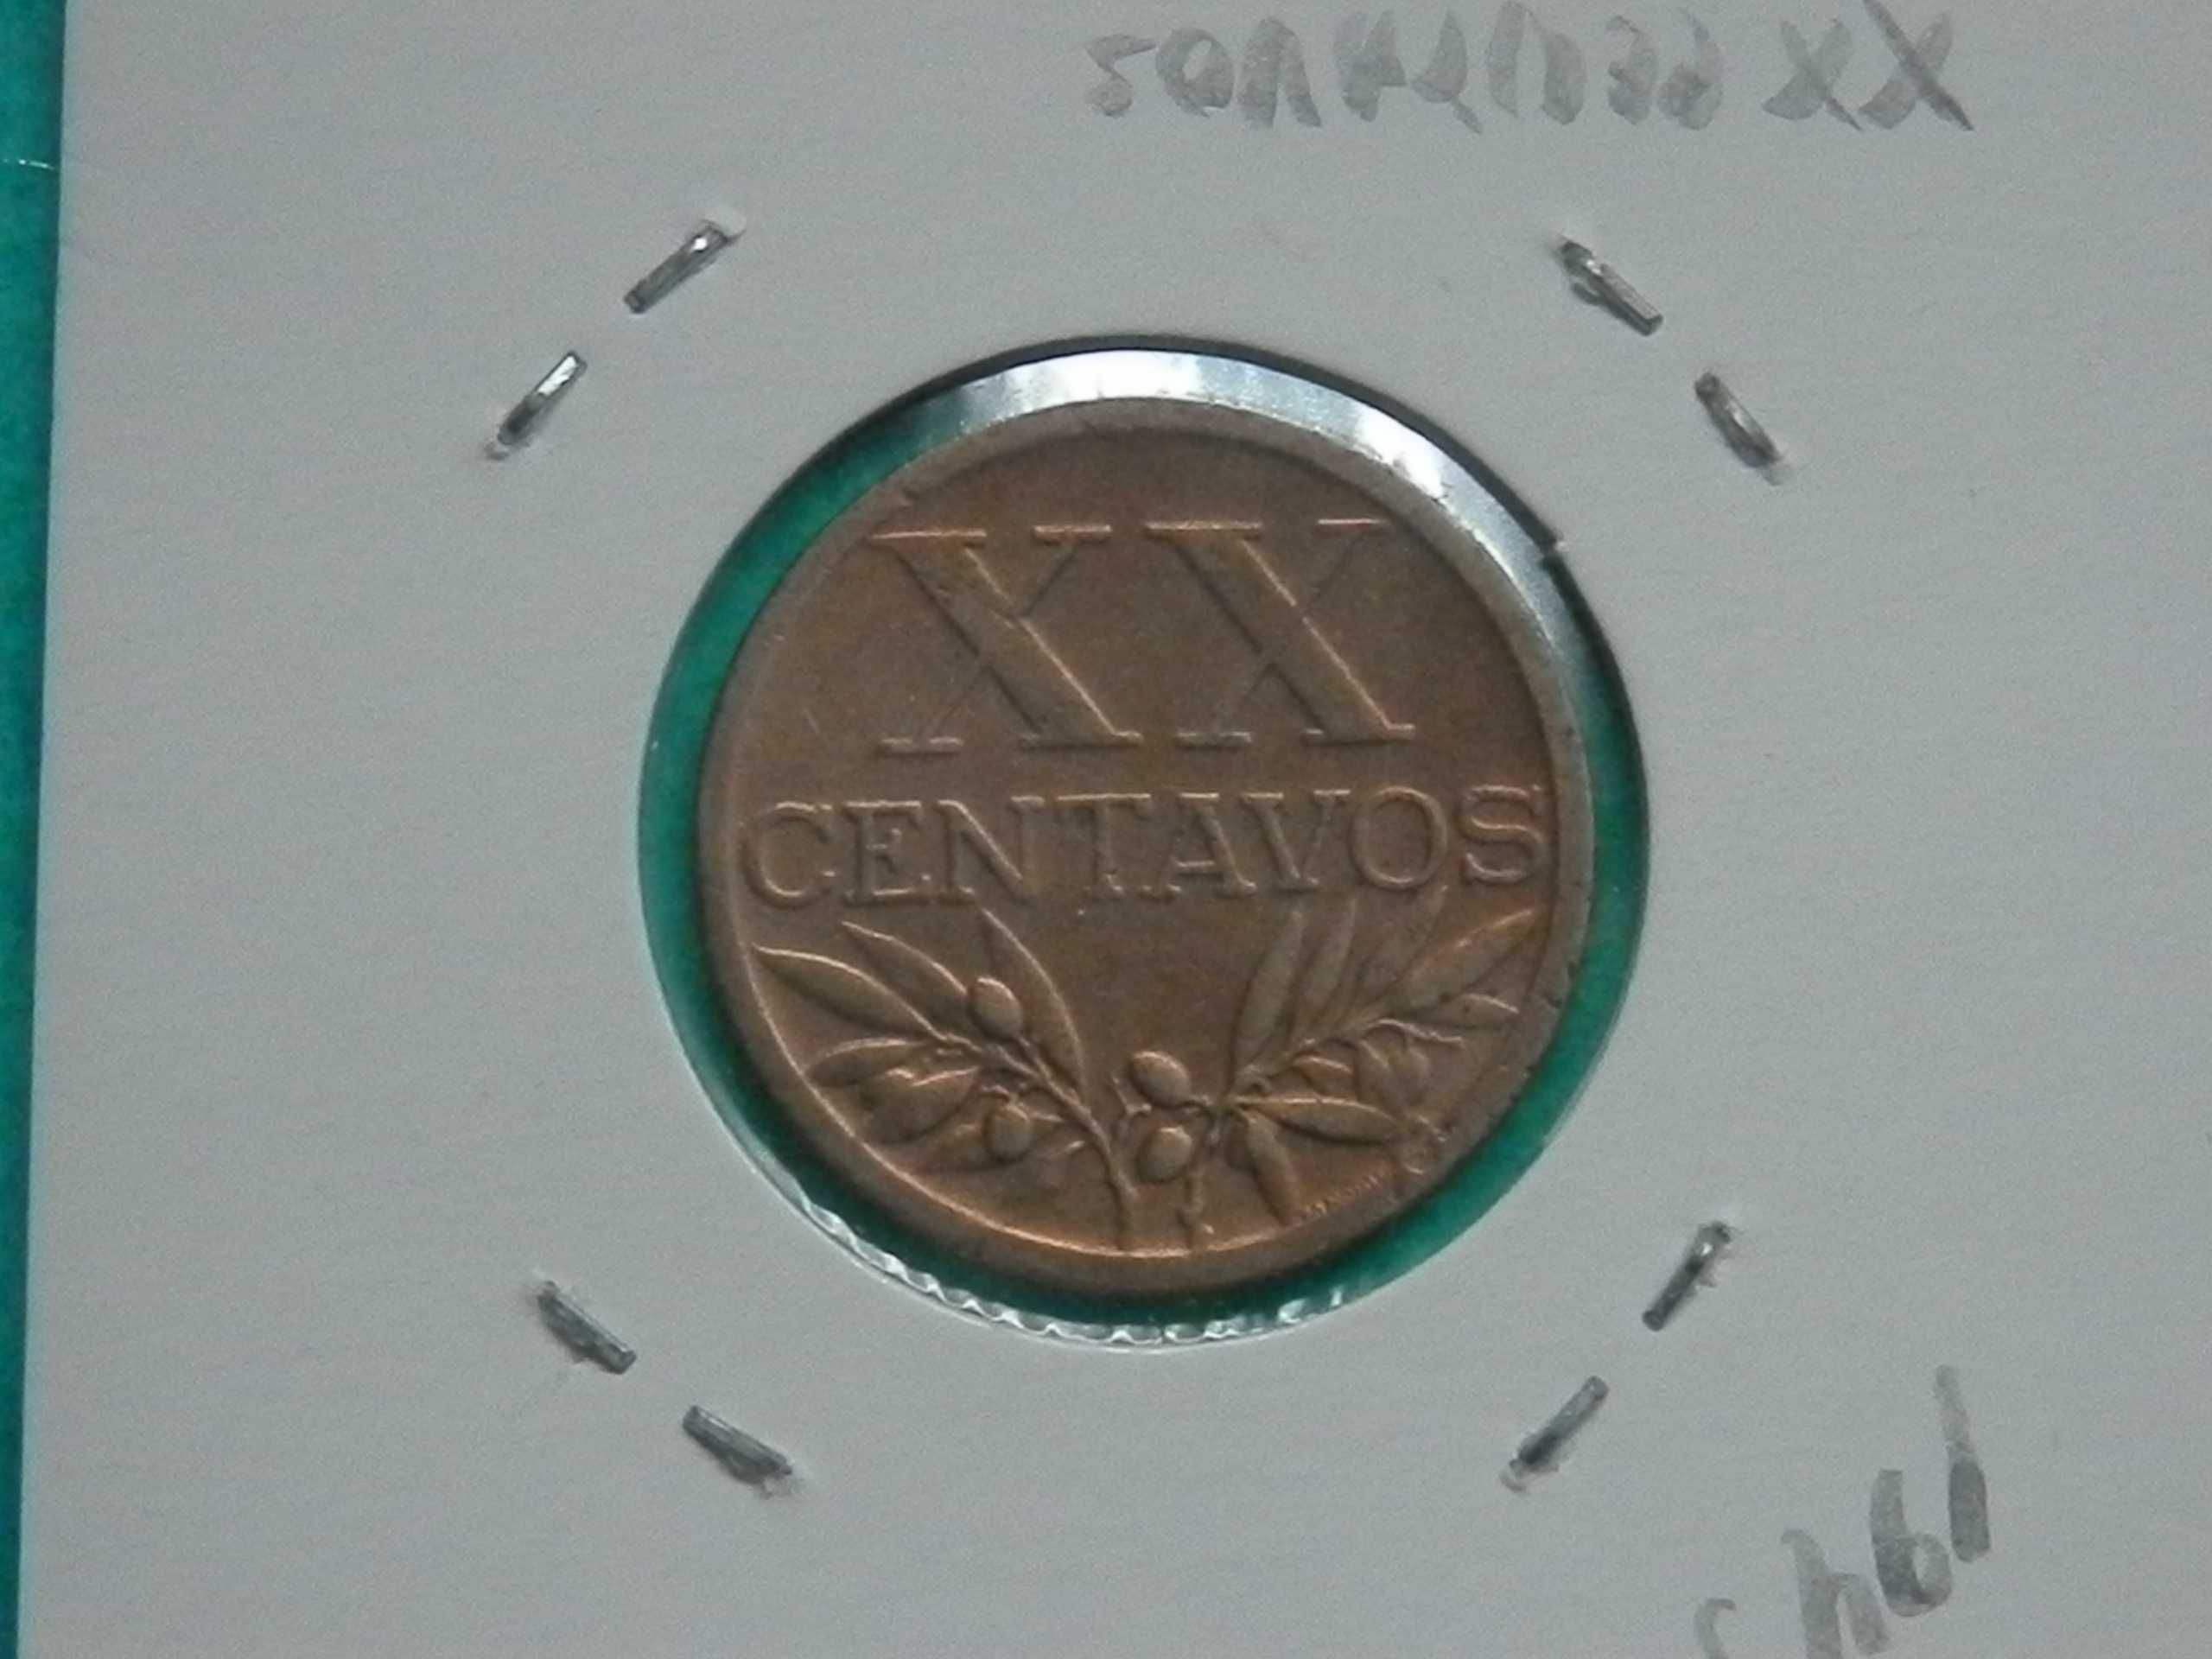 902 - República: XX centavos 1943 bronze, por 1,15